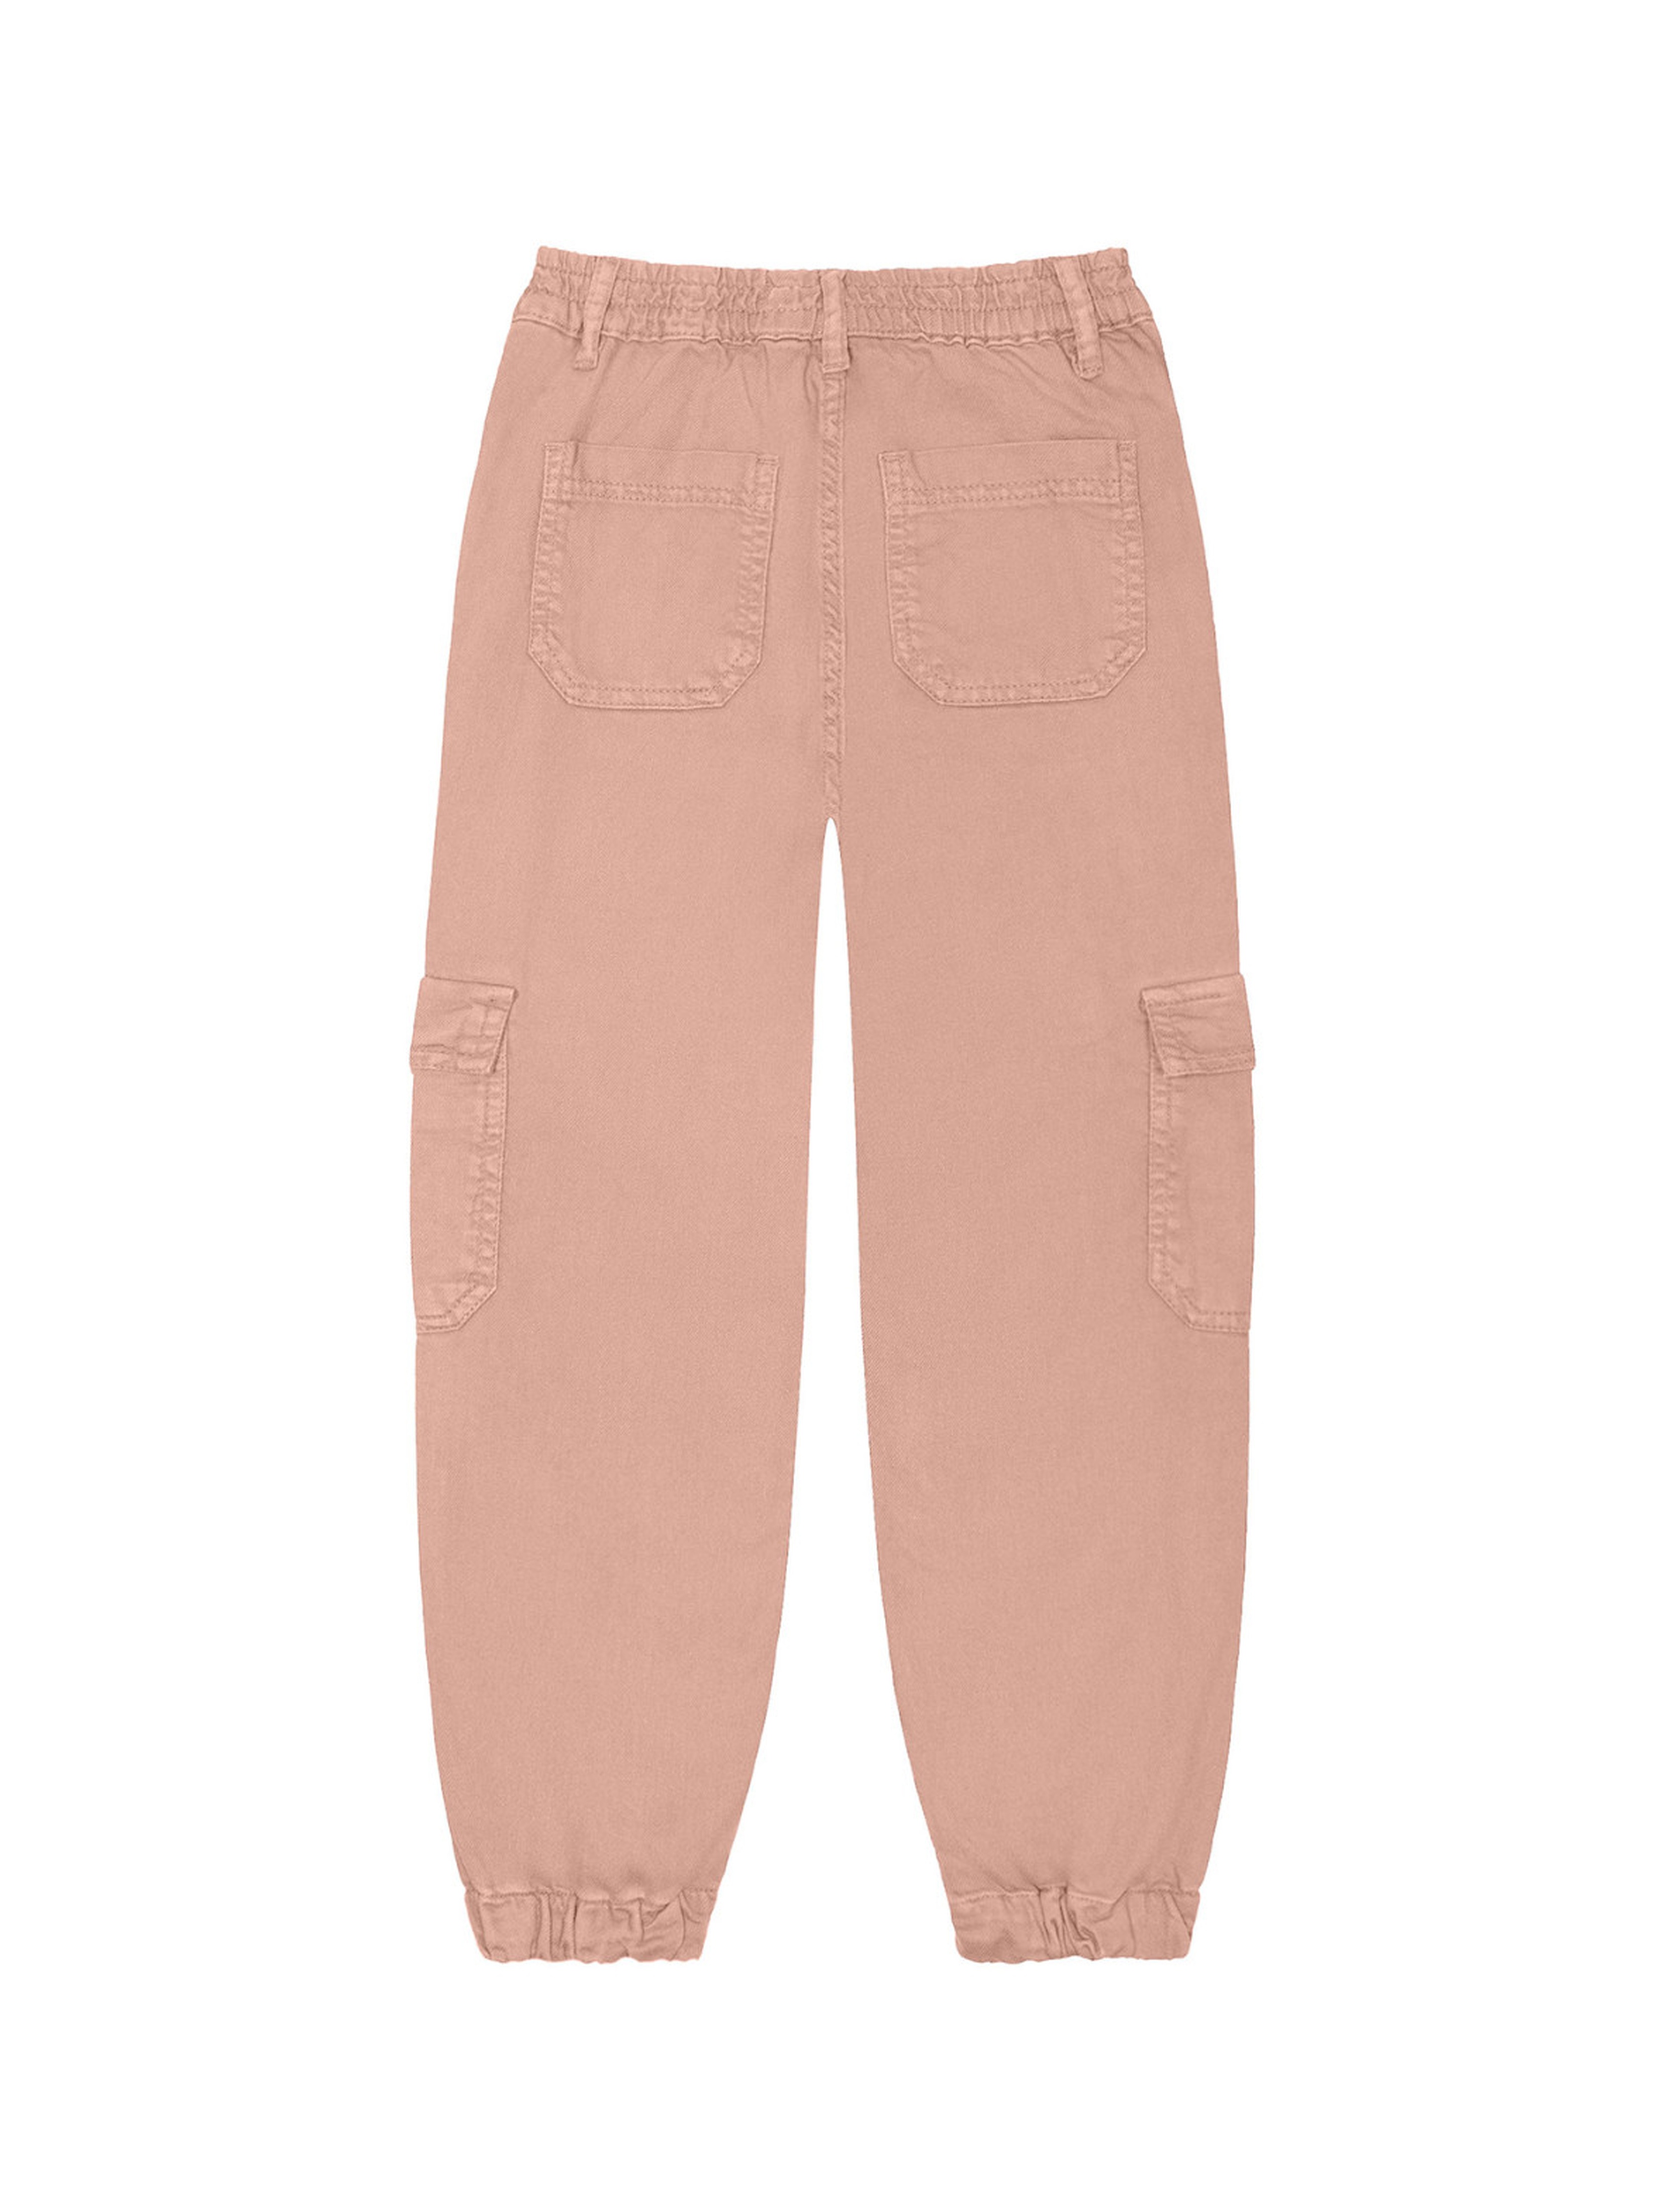 Brzoskwiniowe spodnie typu bojówki dla dziewczynki